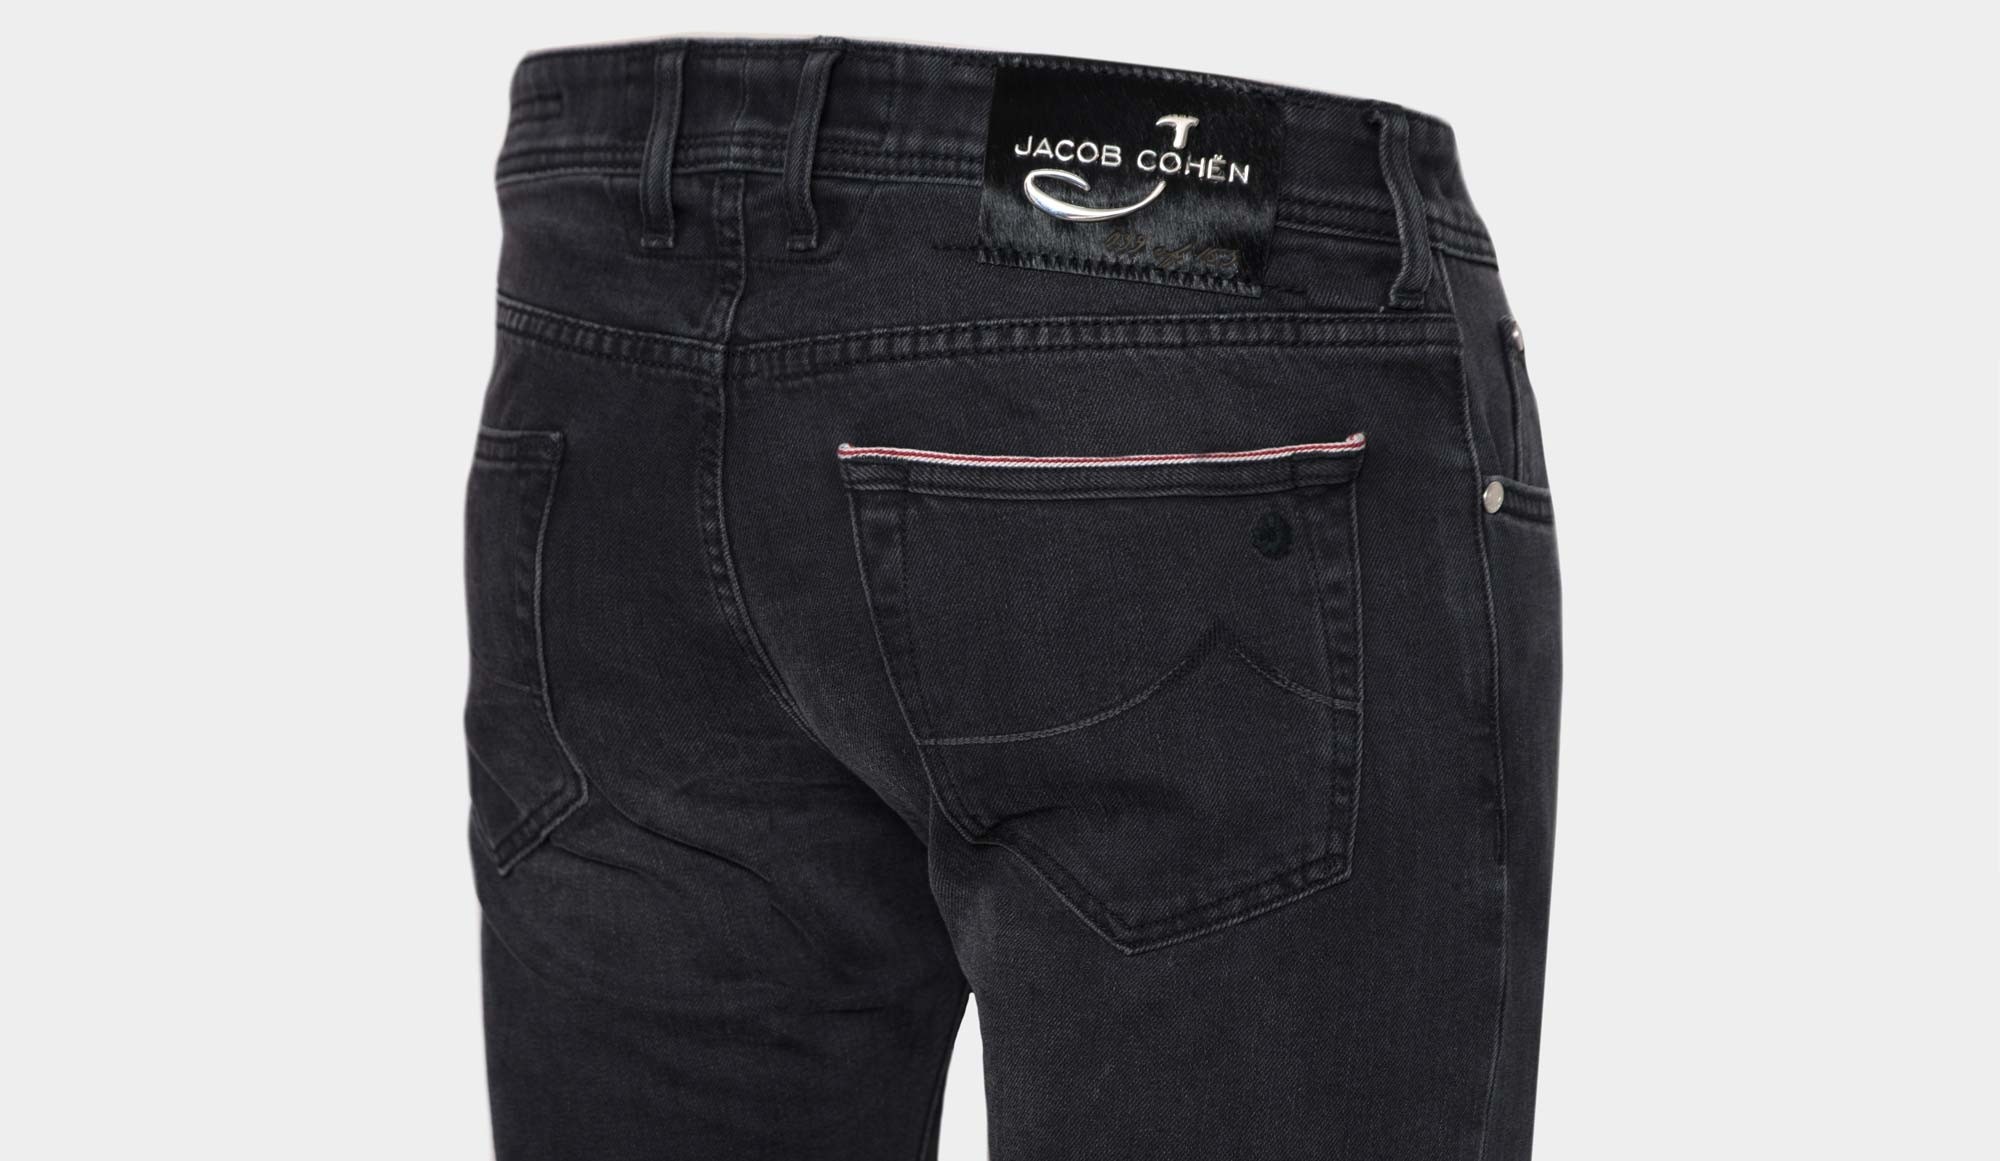 jeans jacob cohen limited edition